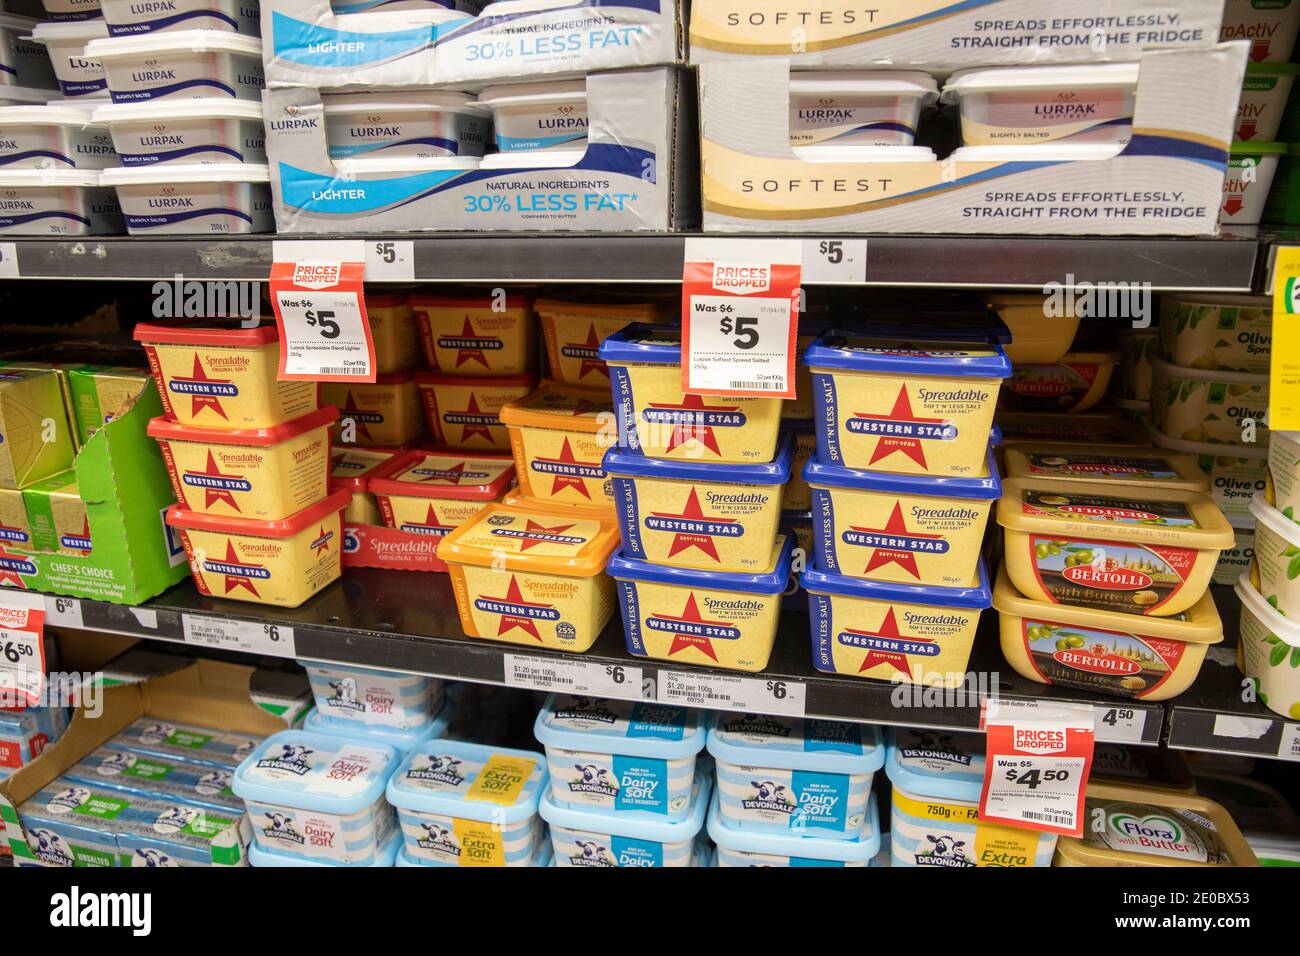 Sydney Supermarket bennes de beurre et margarine WESTERN star et lurpak à vendre dans la section réfrigérée, Sydney, Nouvelle-Galles du Sud, Australie Banque D'Images